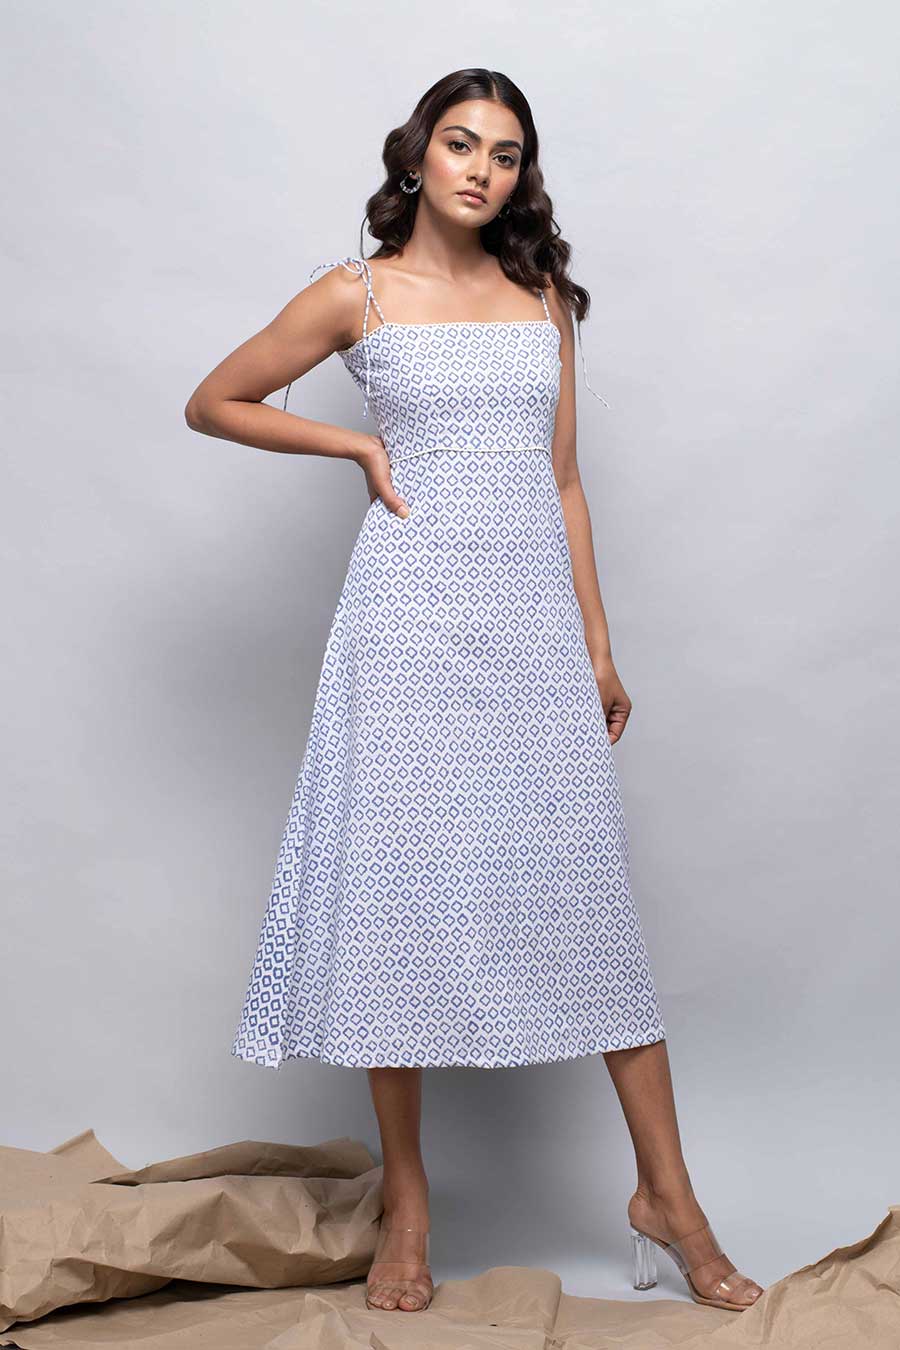 DAYLILY - Blue & White Printed Dress